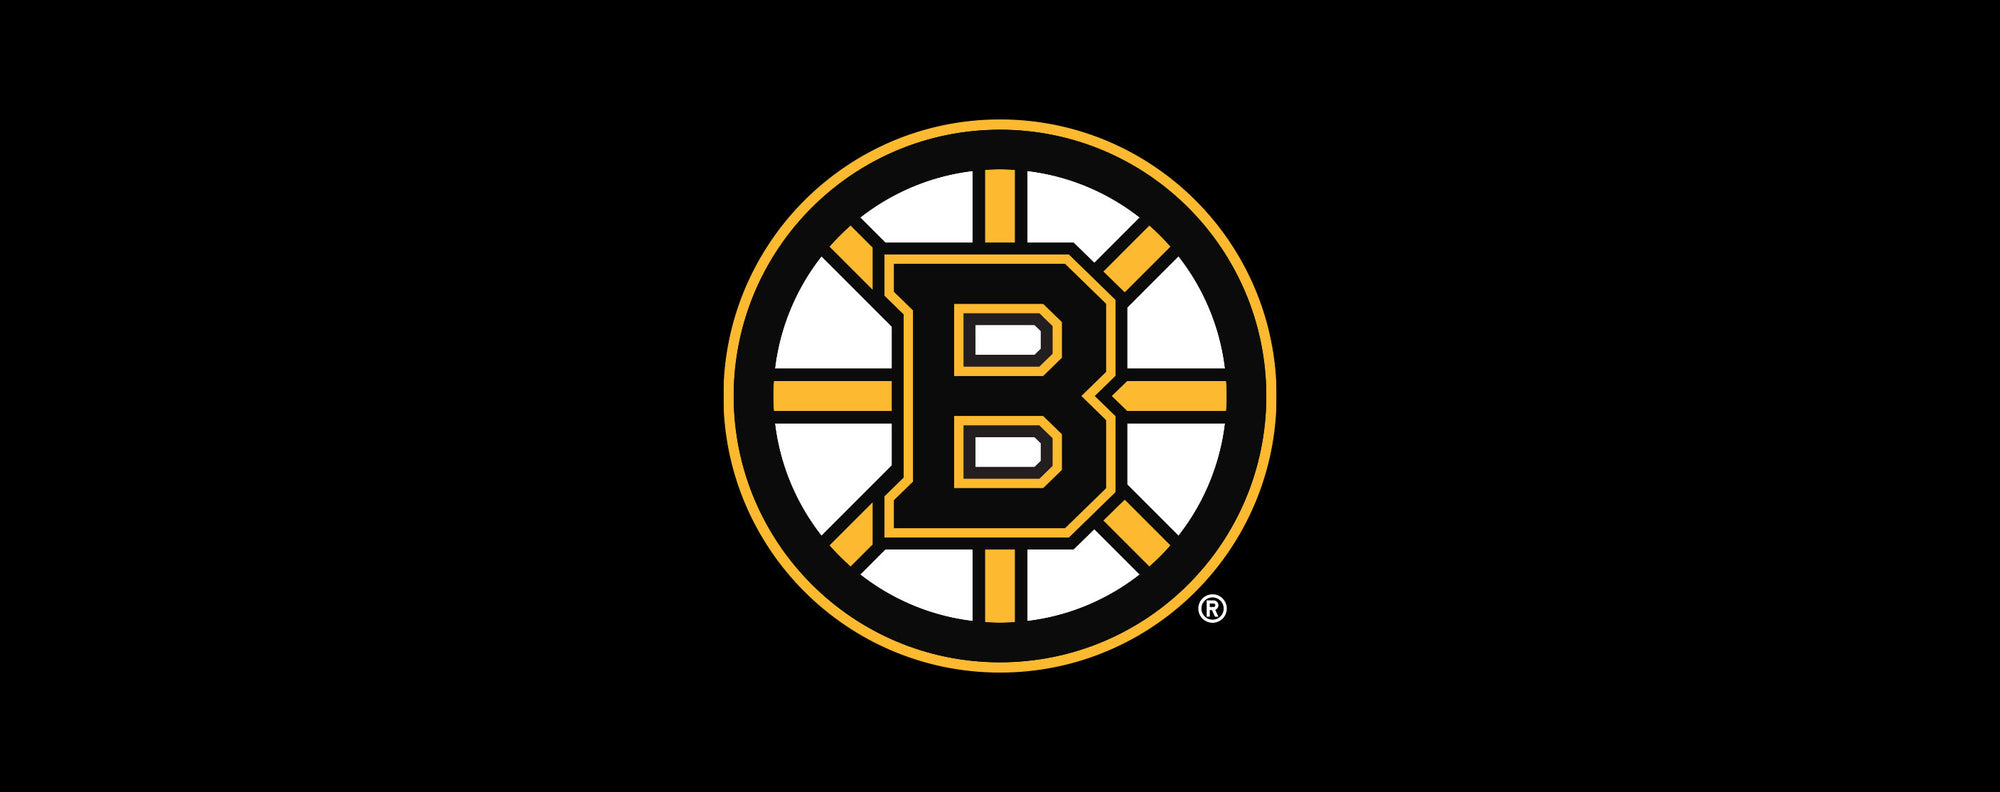 Boston Bruins For Bare Feet Rave Crew Socks